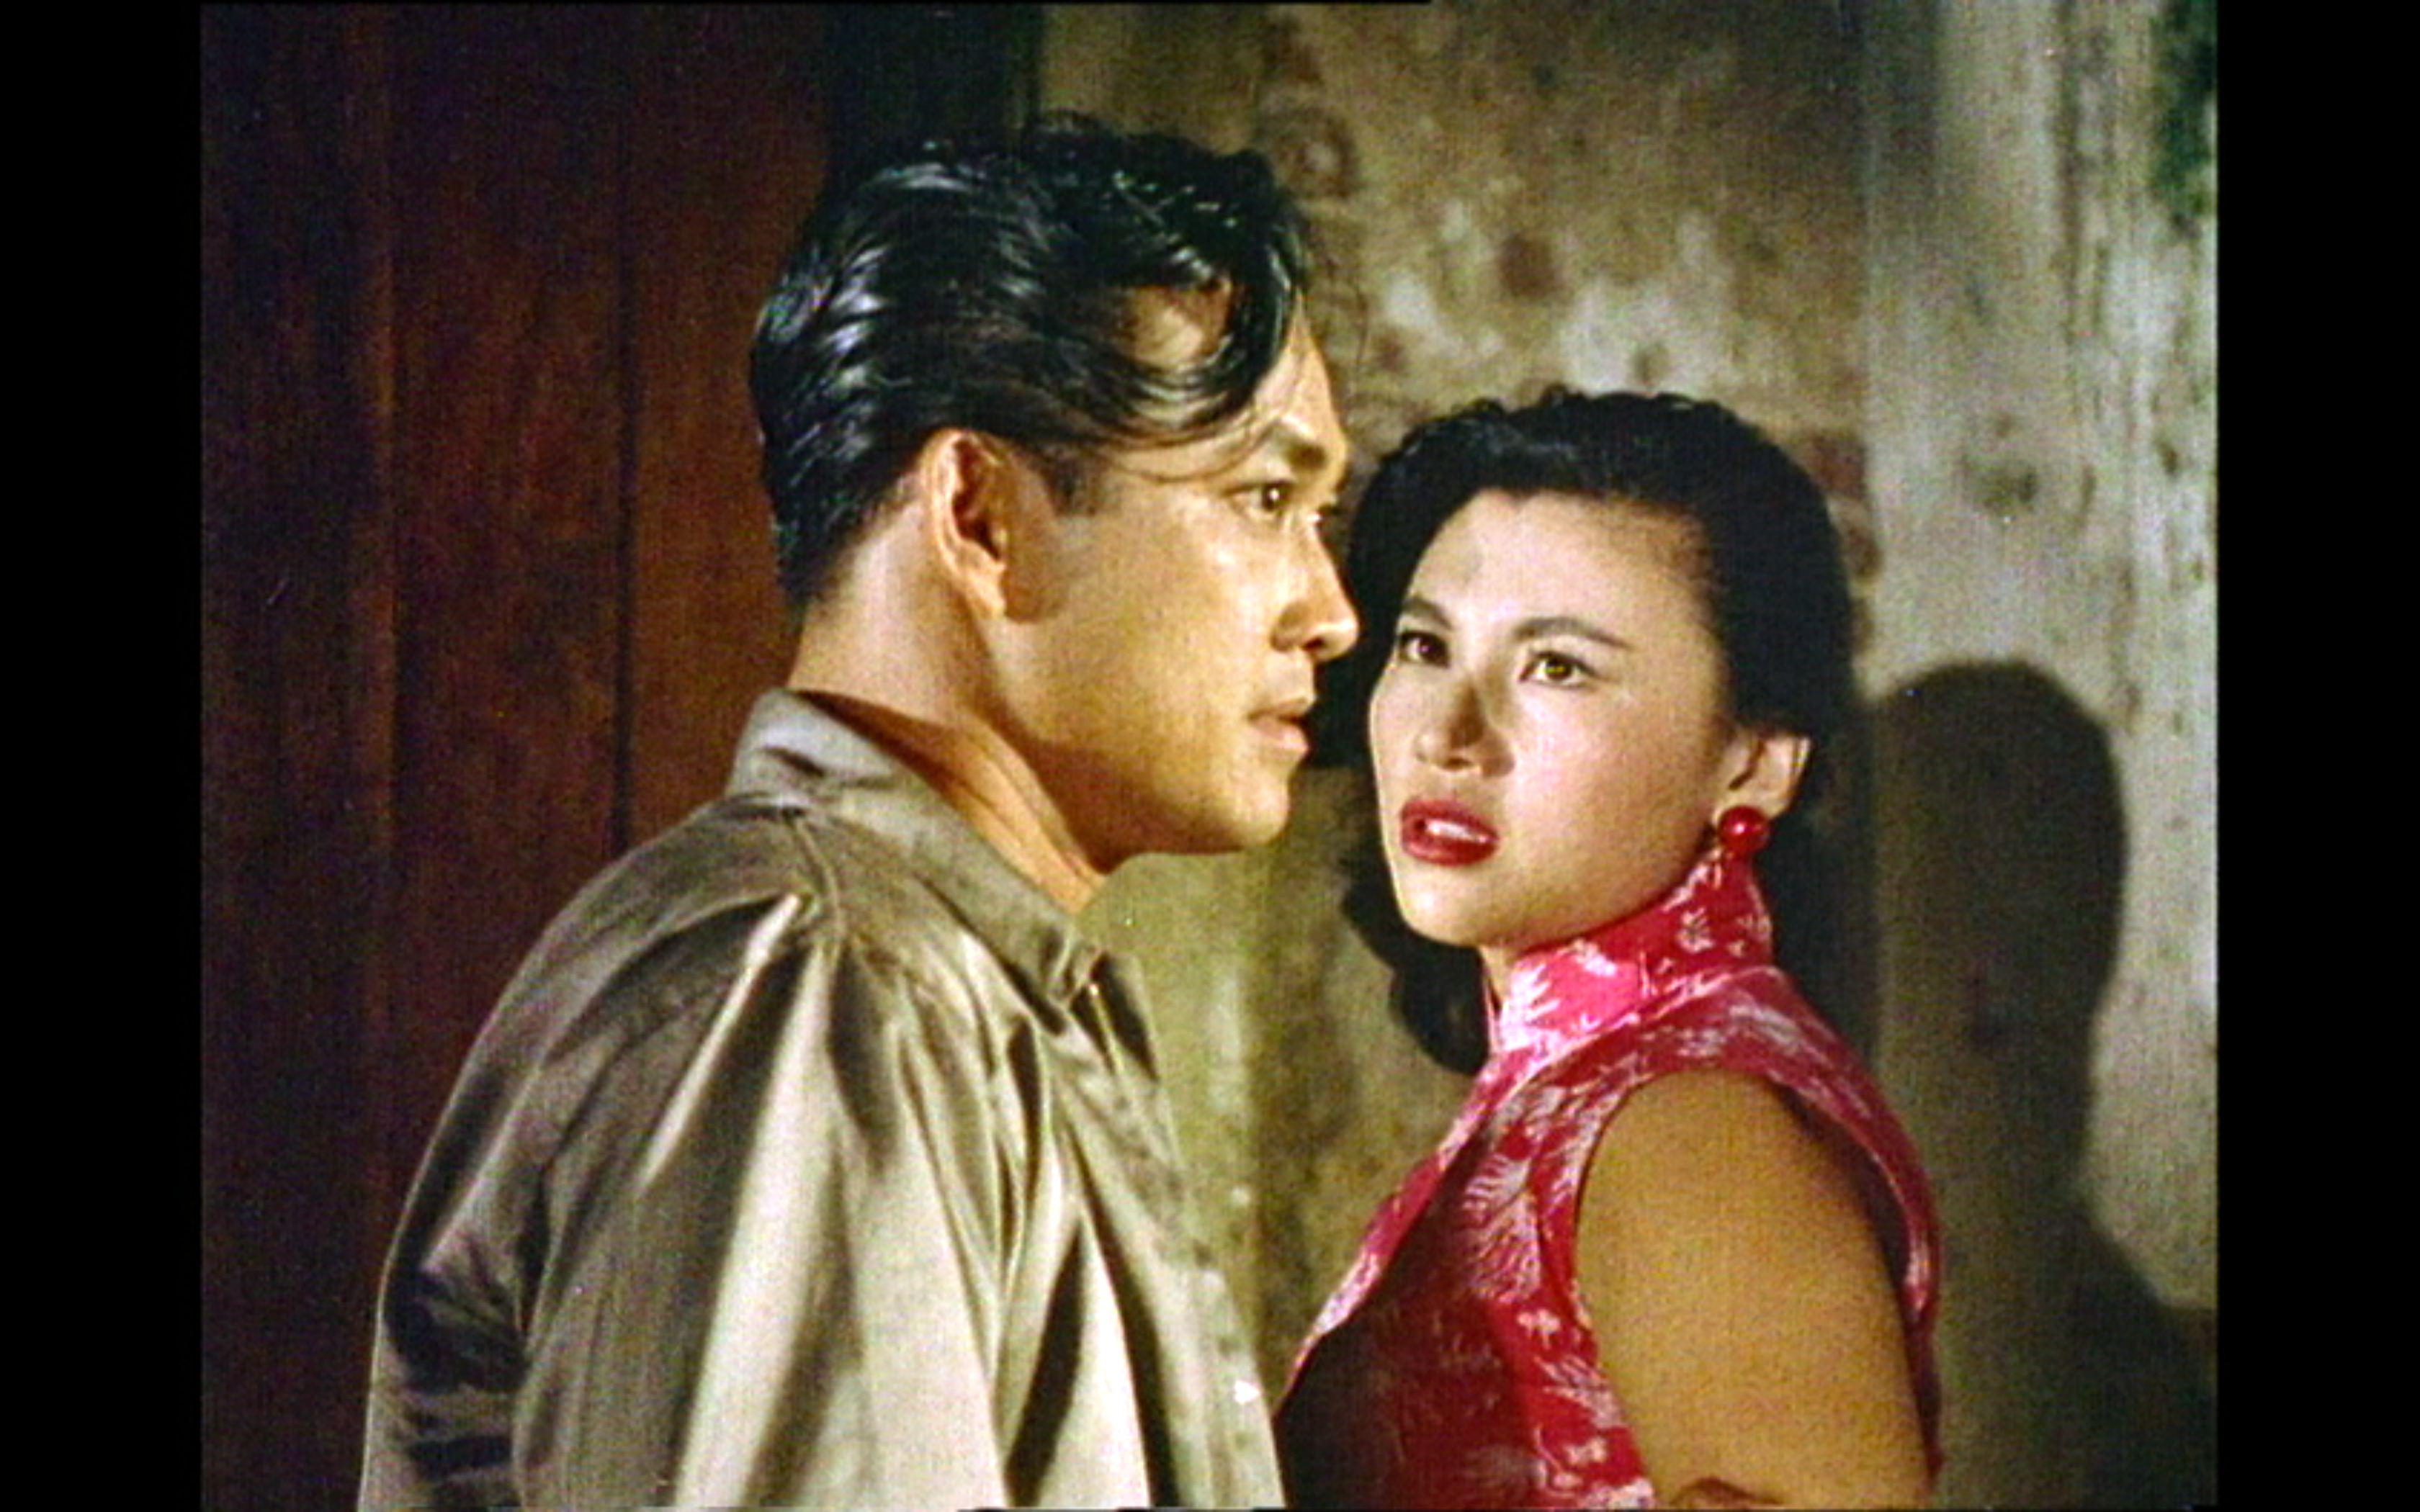 康乐及文化事务署香港电影资料馆（资料馆）的「光影爱漫游」系列将与泰国驻香港总领事馆合作，以「跨界的香港电影——泰国篇」为题，于十一月六日在资料馆电影院放映《地下火花》（1958）和《喋血双雄》（1989），探讨香港与泰国在电影市场上跨越地域的联系。图示《地下火花》剧照。